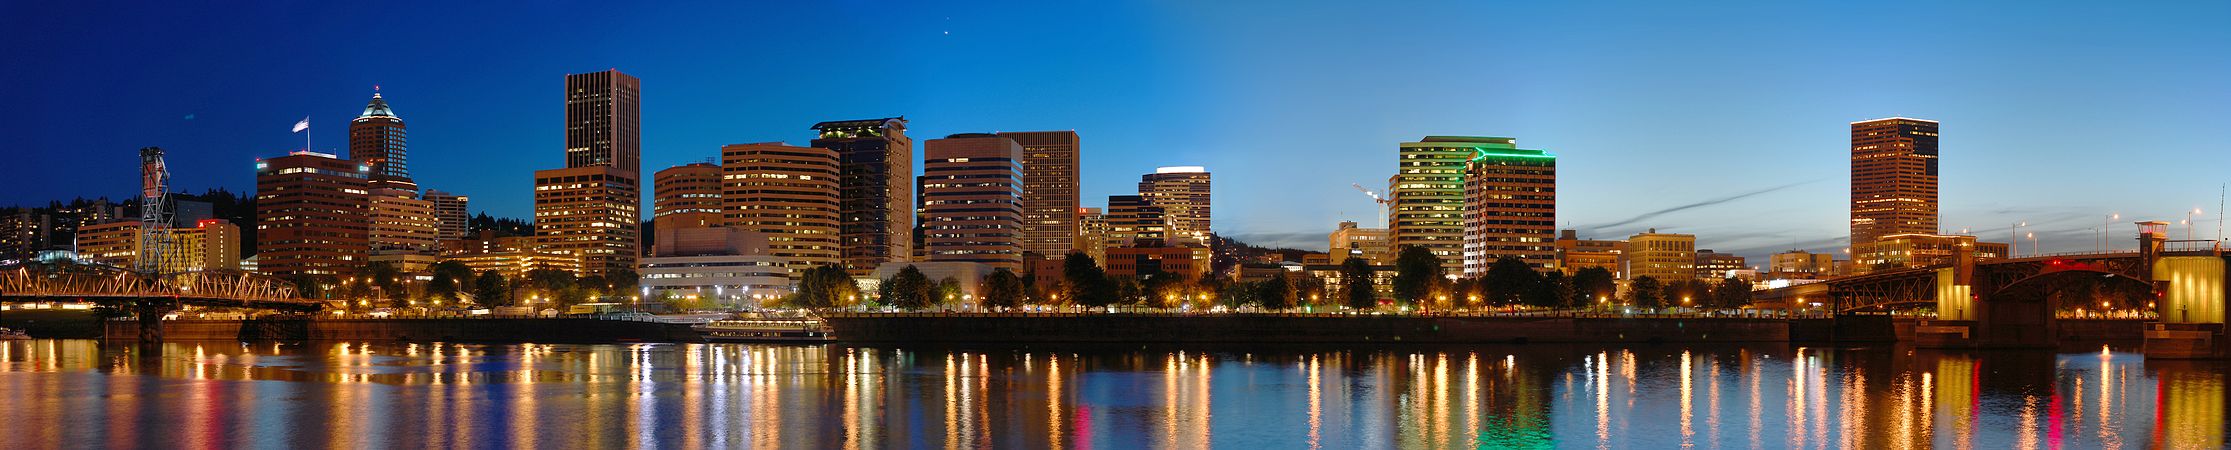 Night skyline of Portland, Oregon, by Fcb981